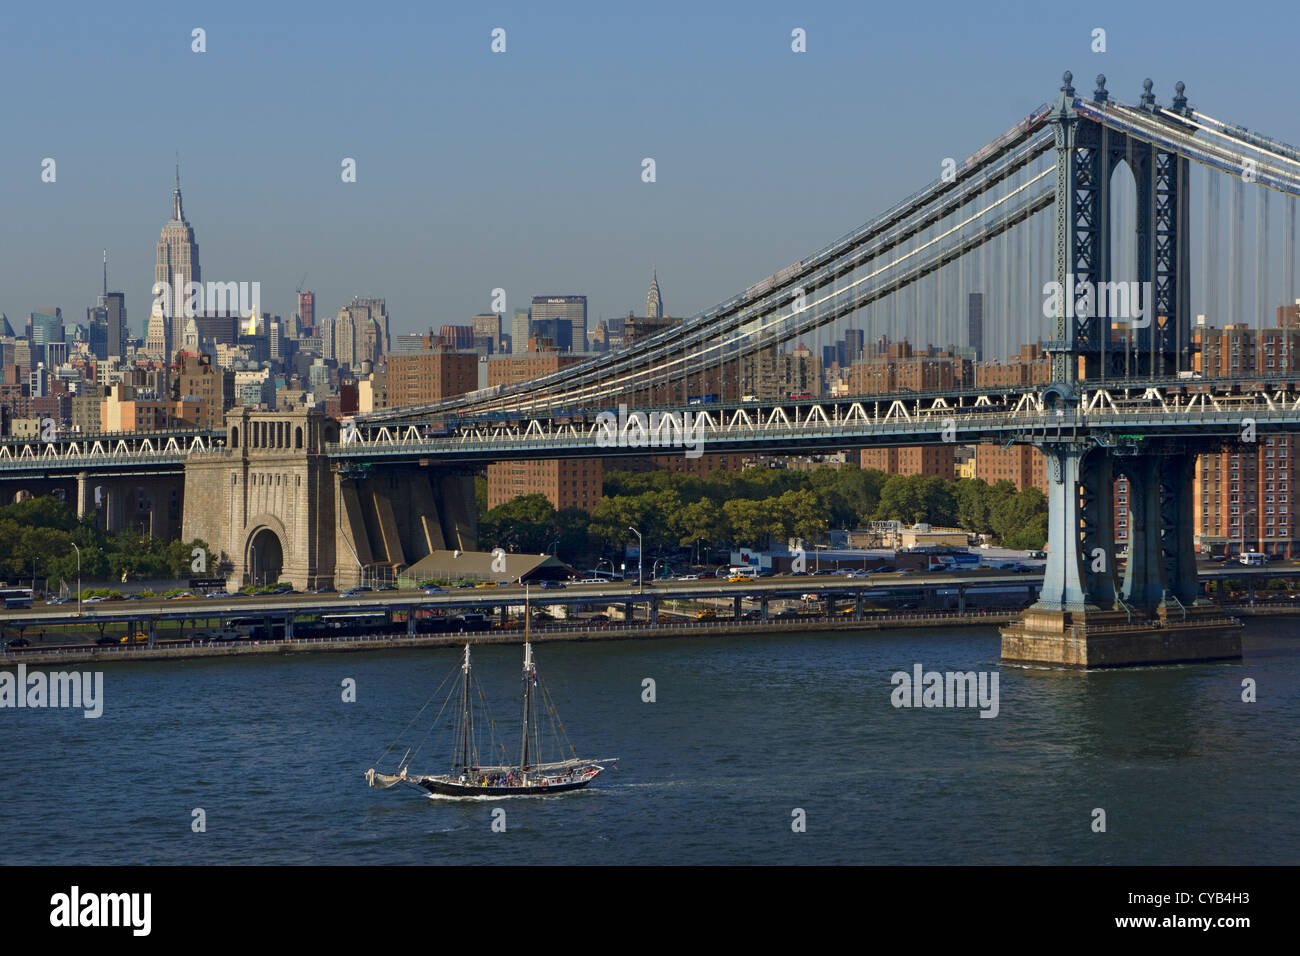 Vue depuis le pont de Brooklyn au cours de l'East River avec pont de Manhattan et midtown skyline et empire state, New York, USA Banque D'Images